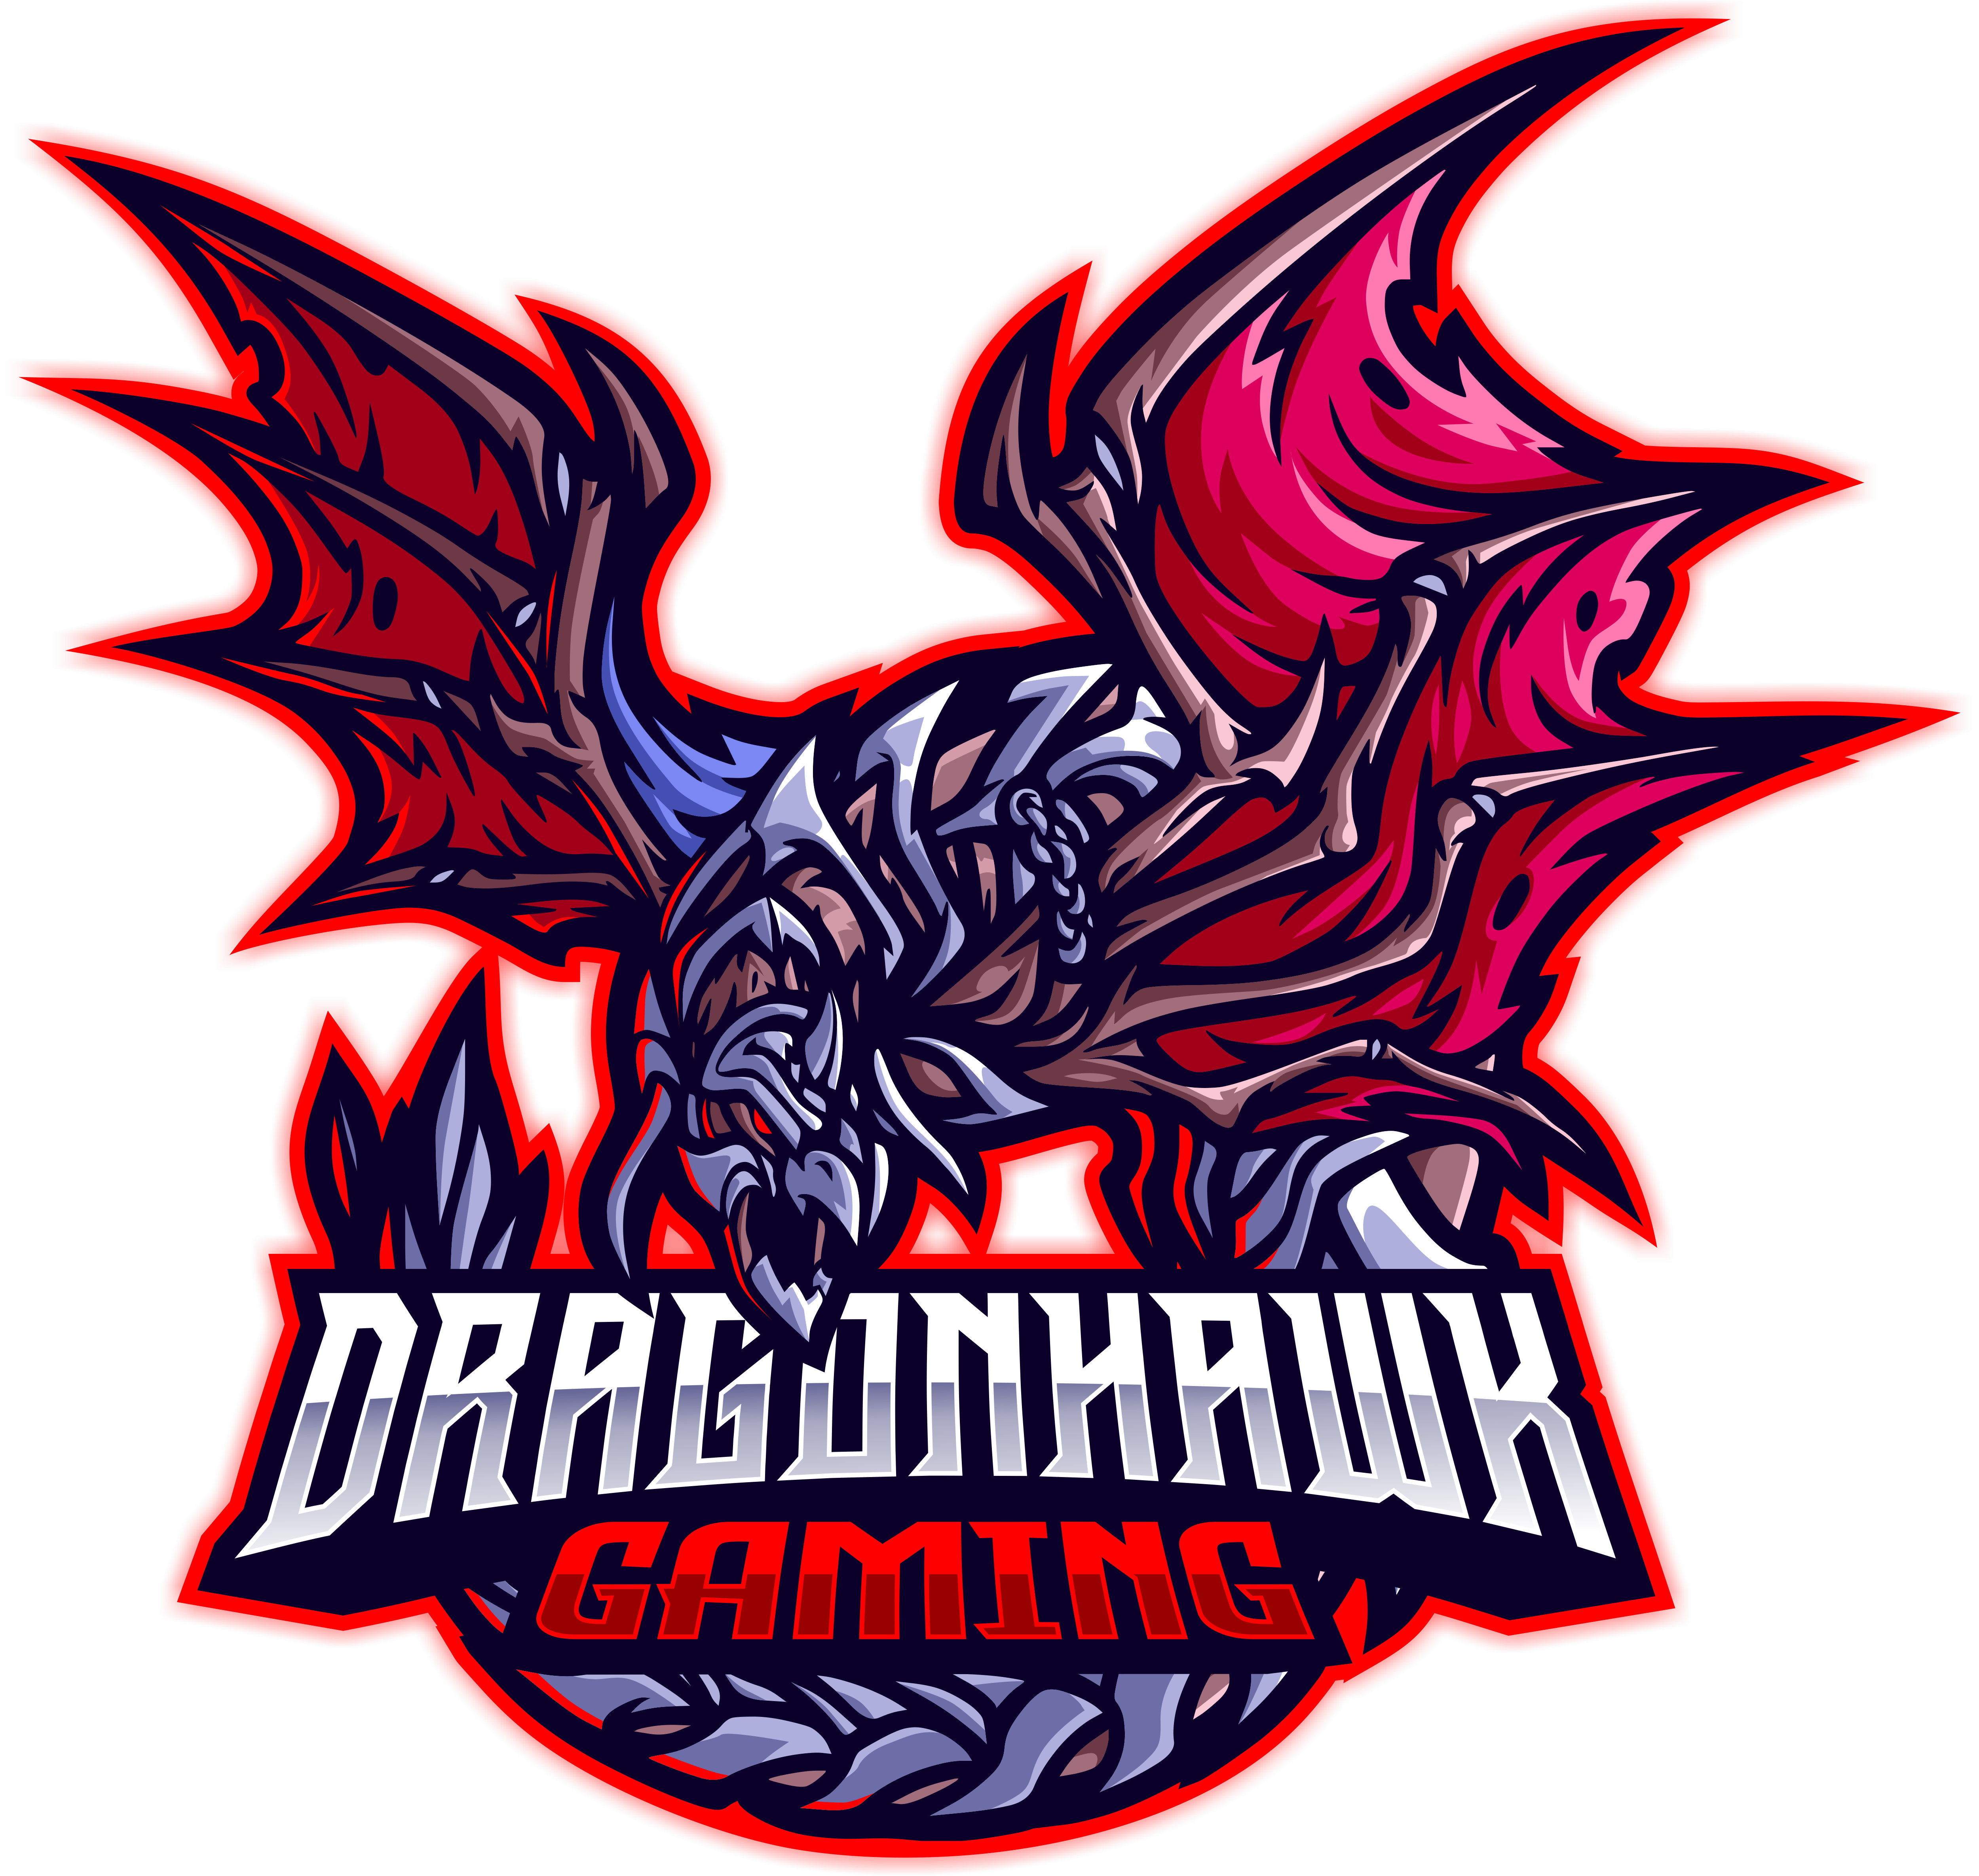 Dragonhawk Gaming